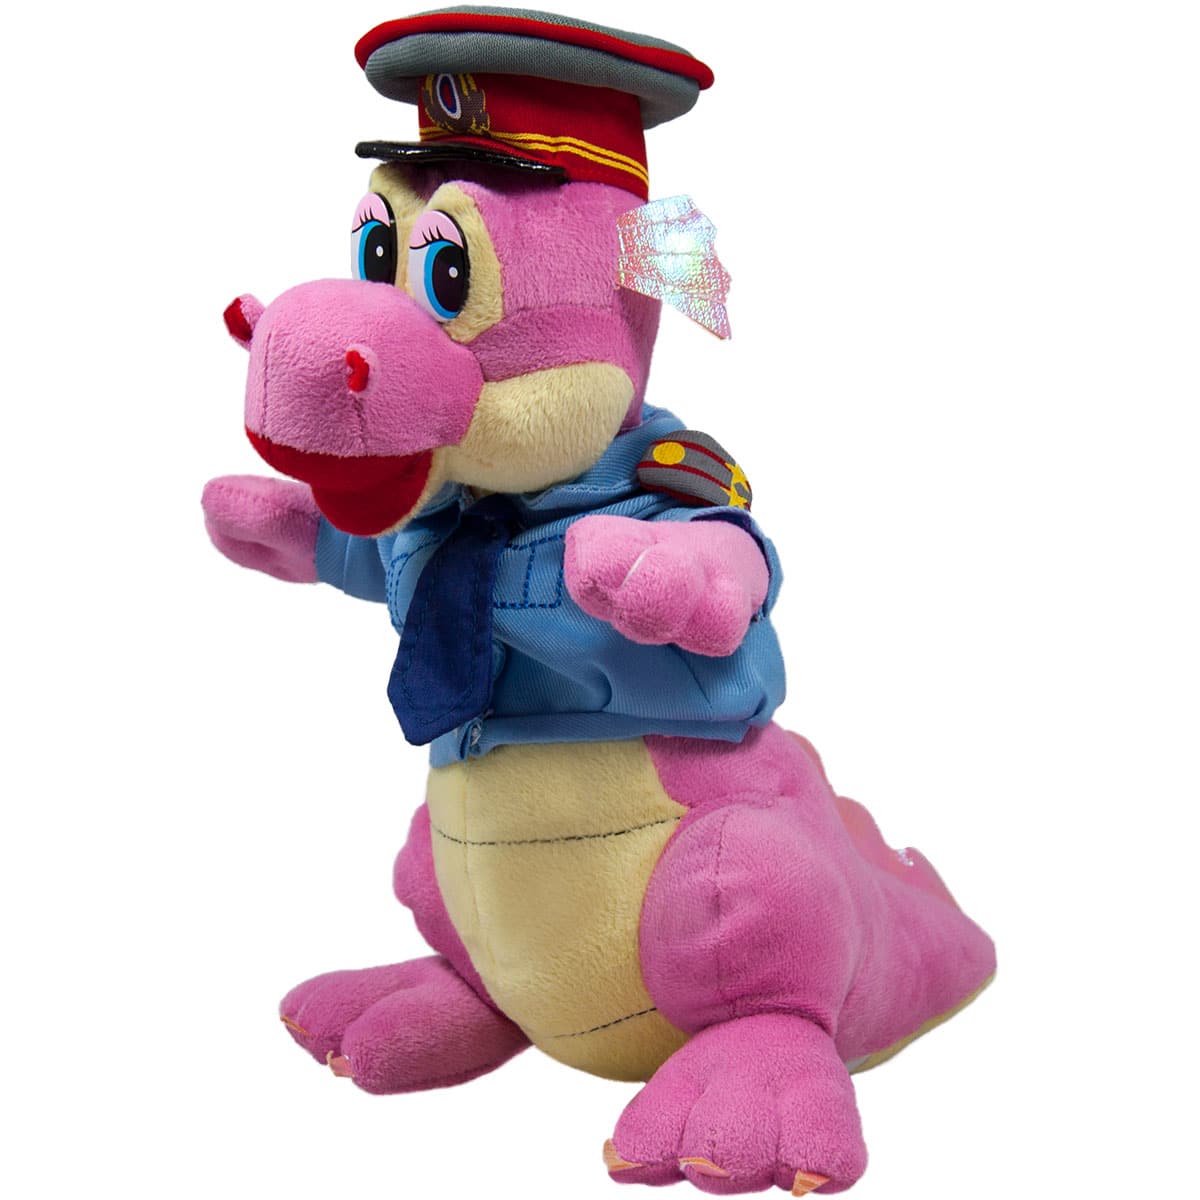 Dragon policeman - Pink